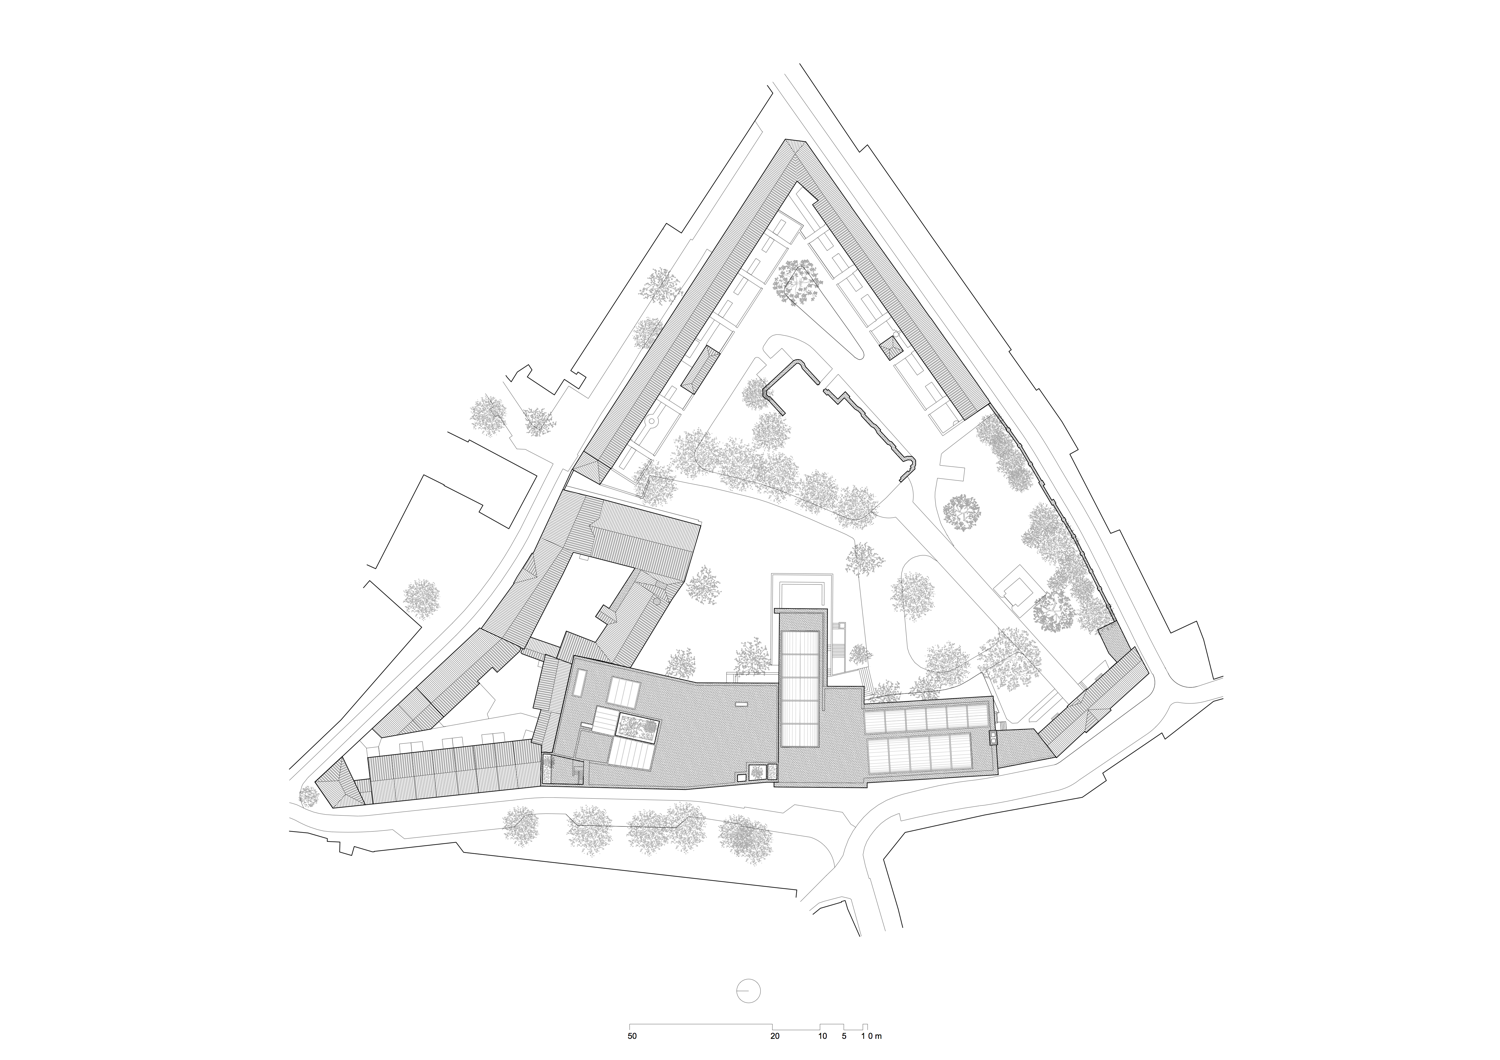 Z33, drawing site plan (A3)
© Francesca Torzo